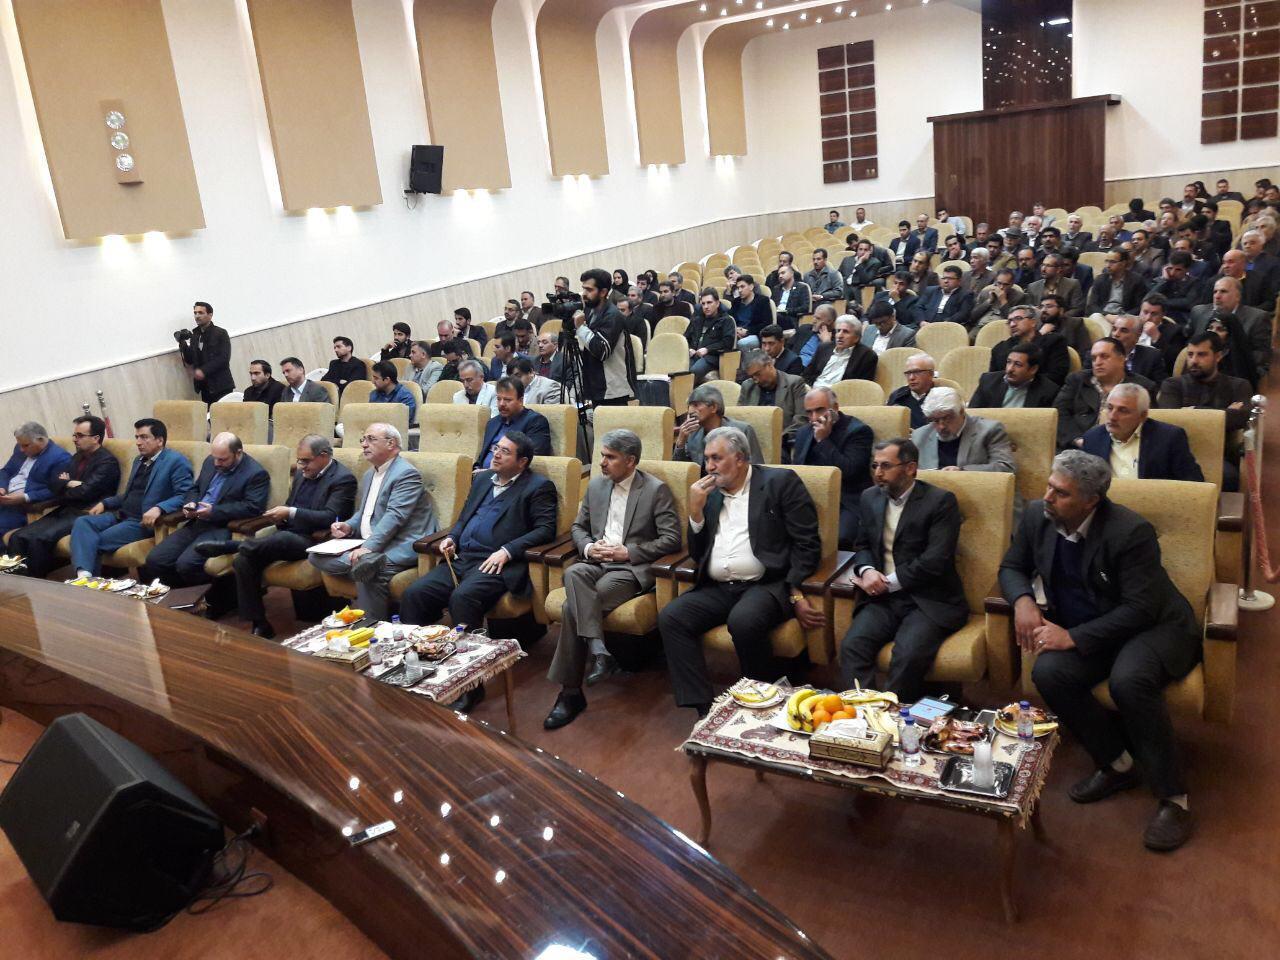 سهل آبادي:قانون در اصفهان براي فعالان اقتصادي بسيار سخت گيرانه اعمال مي شود